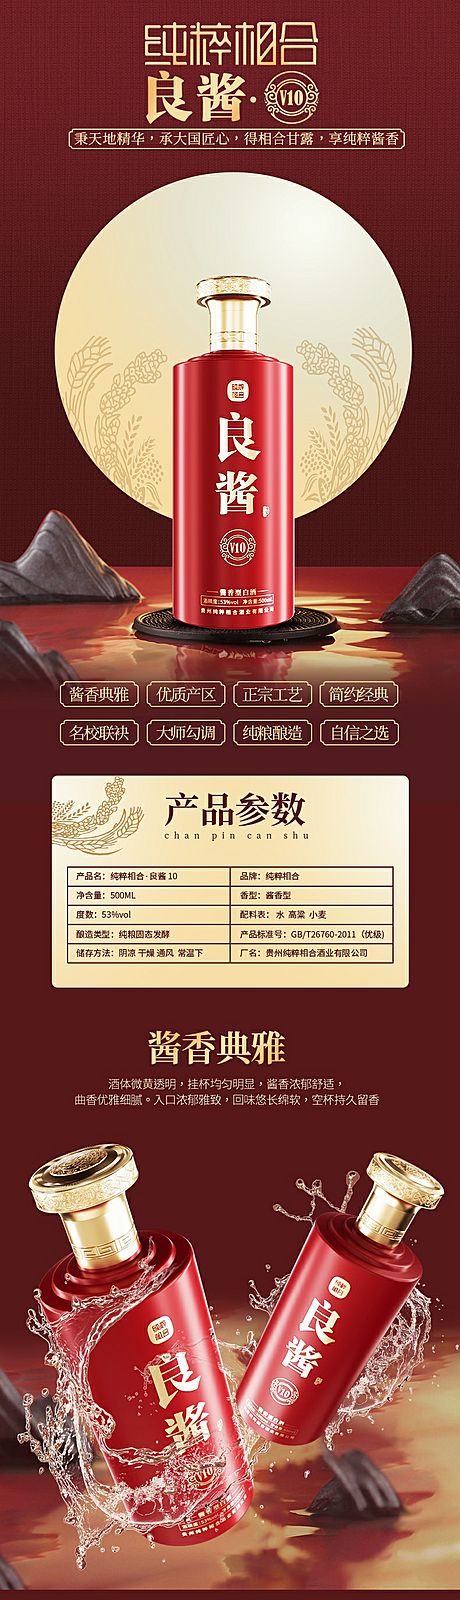 仙图网-酒类产品详情页